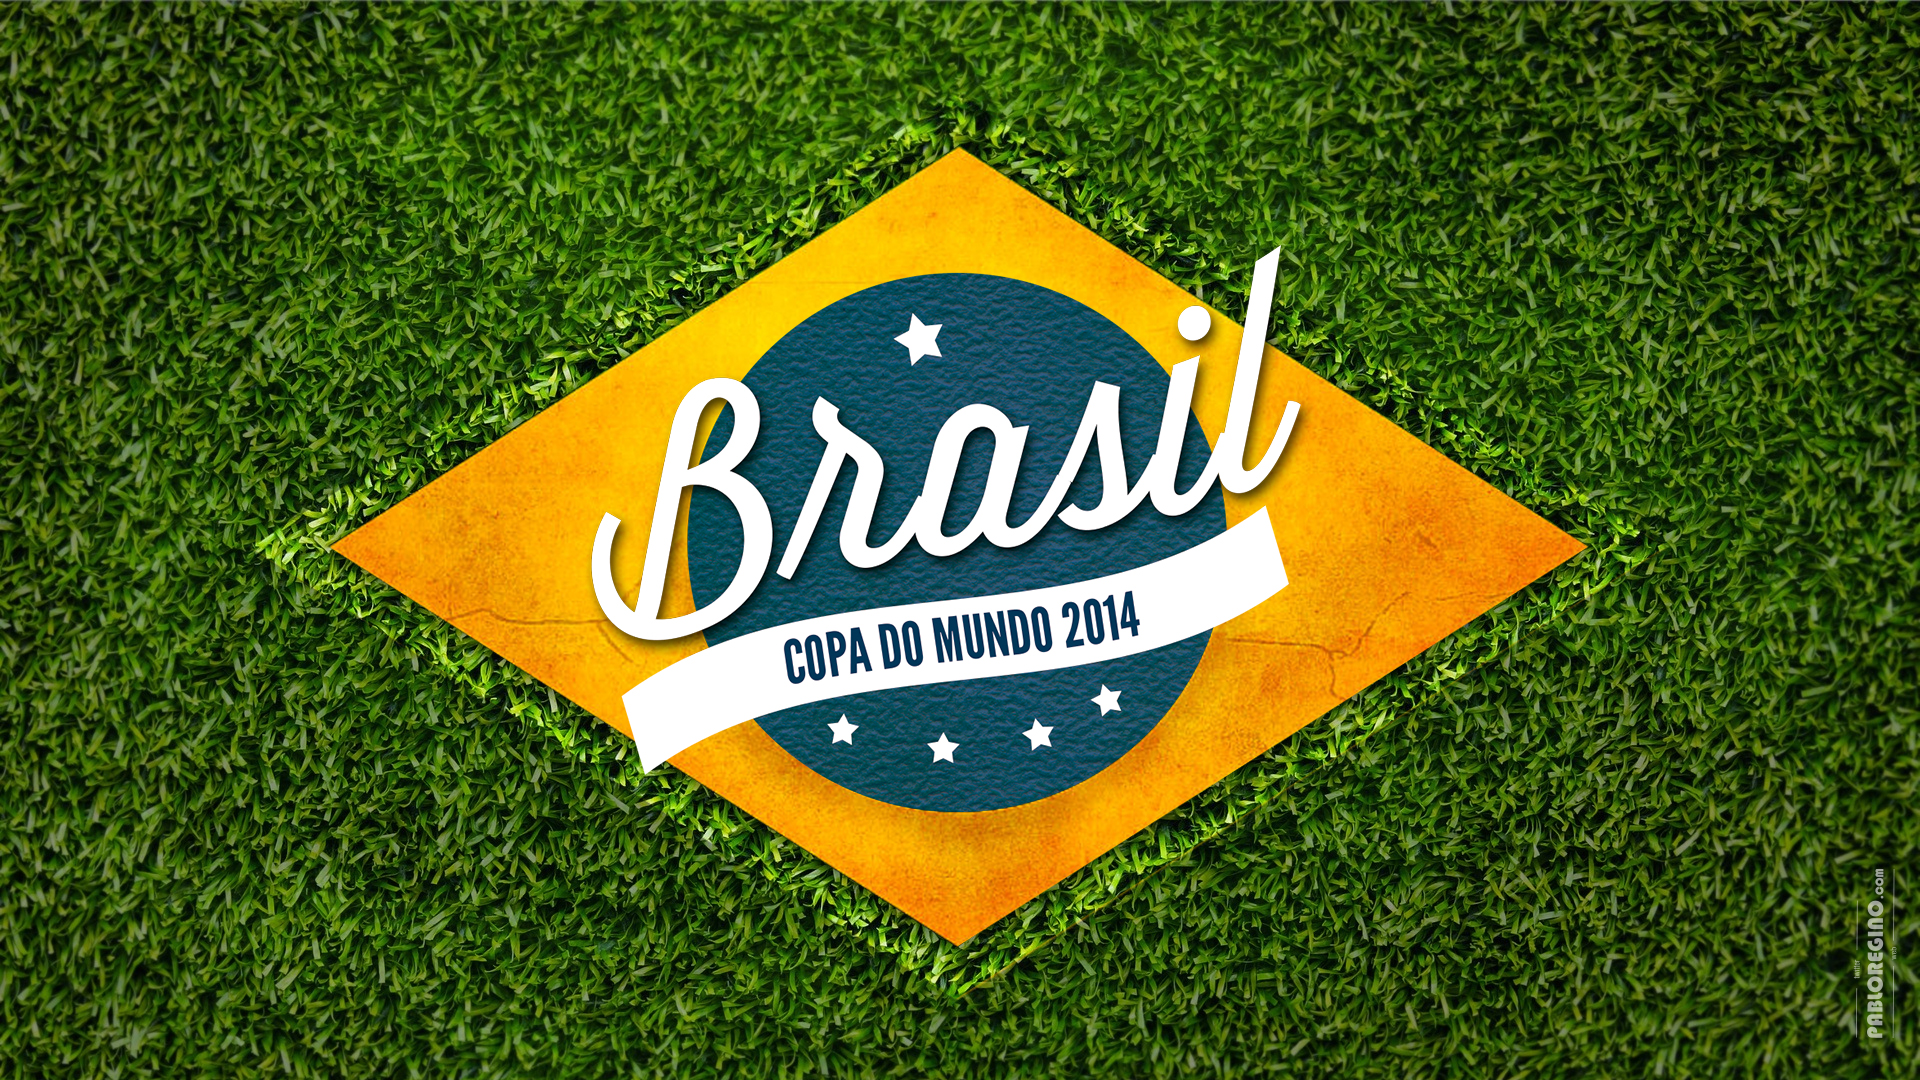 FiFA FiFA World Cup Brasil 2014 1920x1080